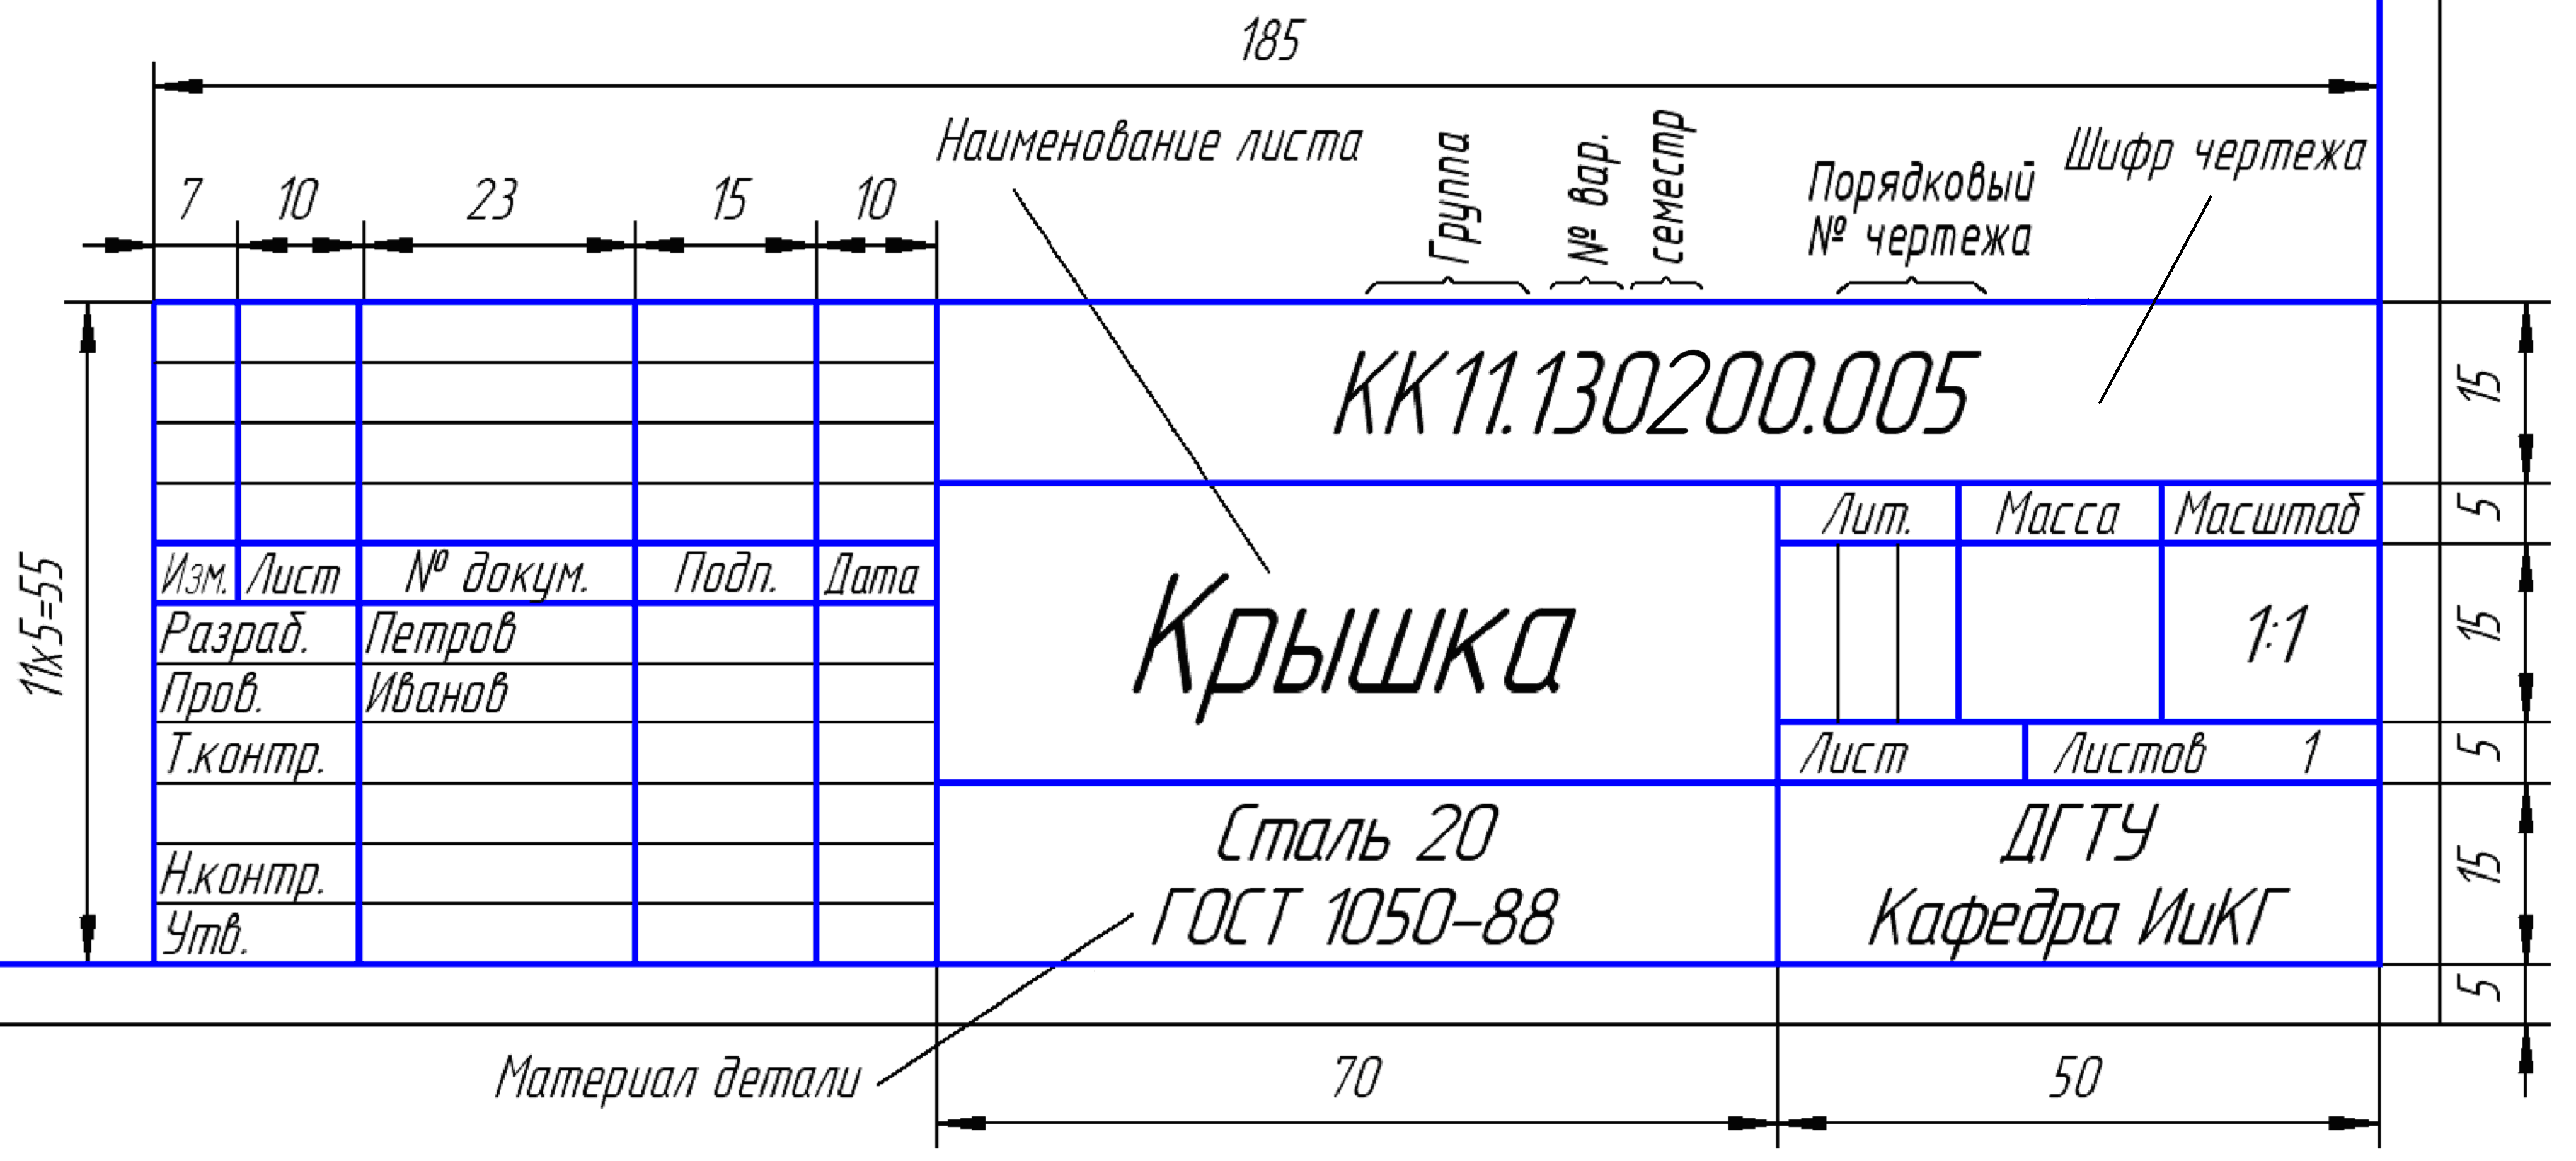 Пример оформления основной надписи